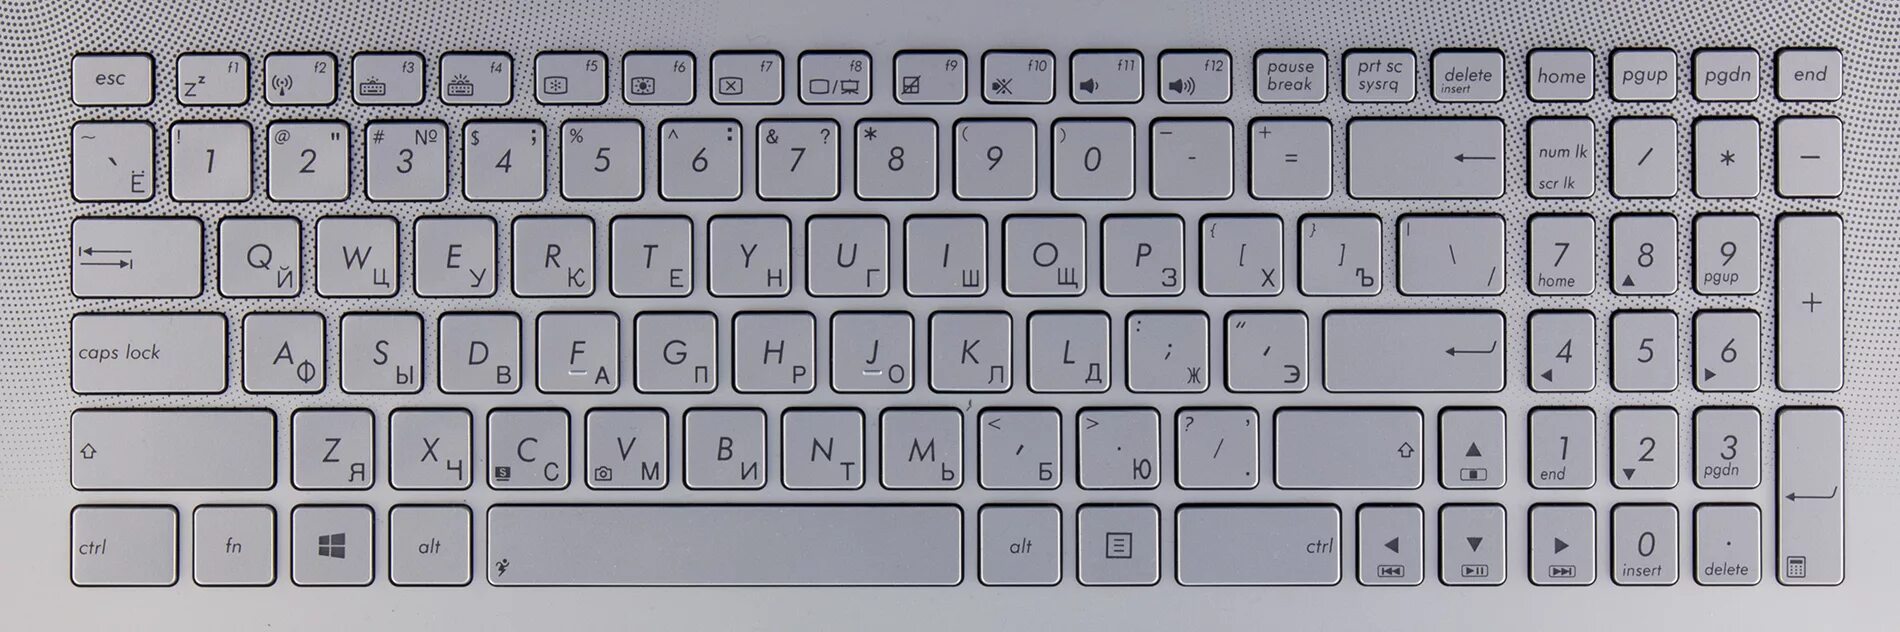 Клавиатура ноутбука. Распечатка клавиатуры ноутбука. Изображение клавиатуры ноутбука. Нарисованная клавиатура ноутбука.